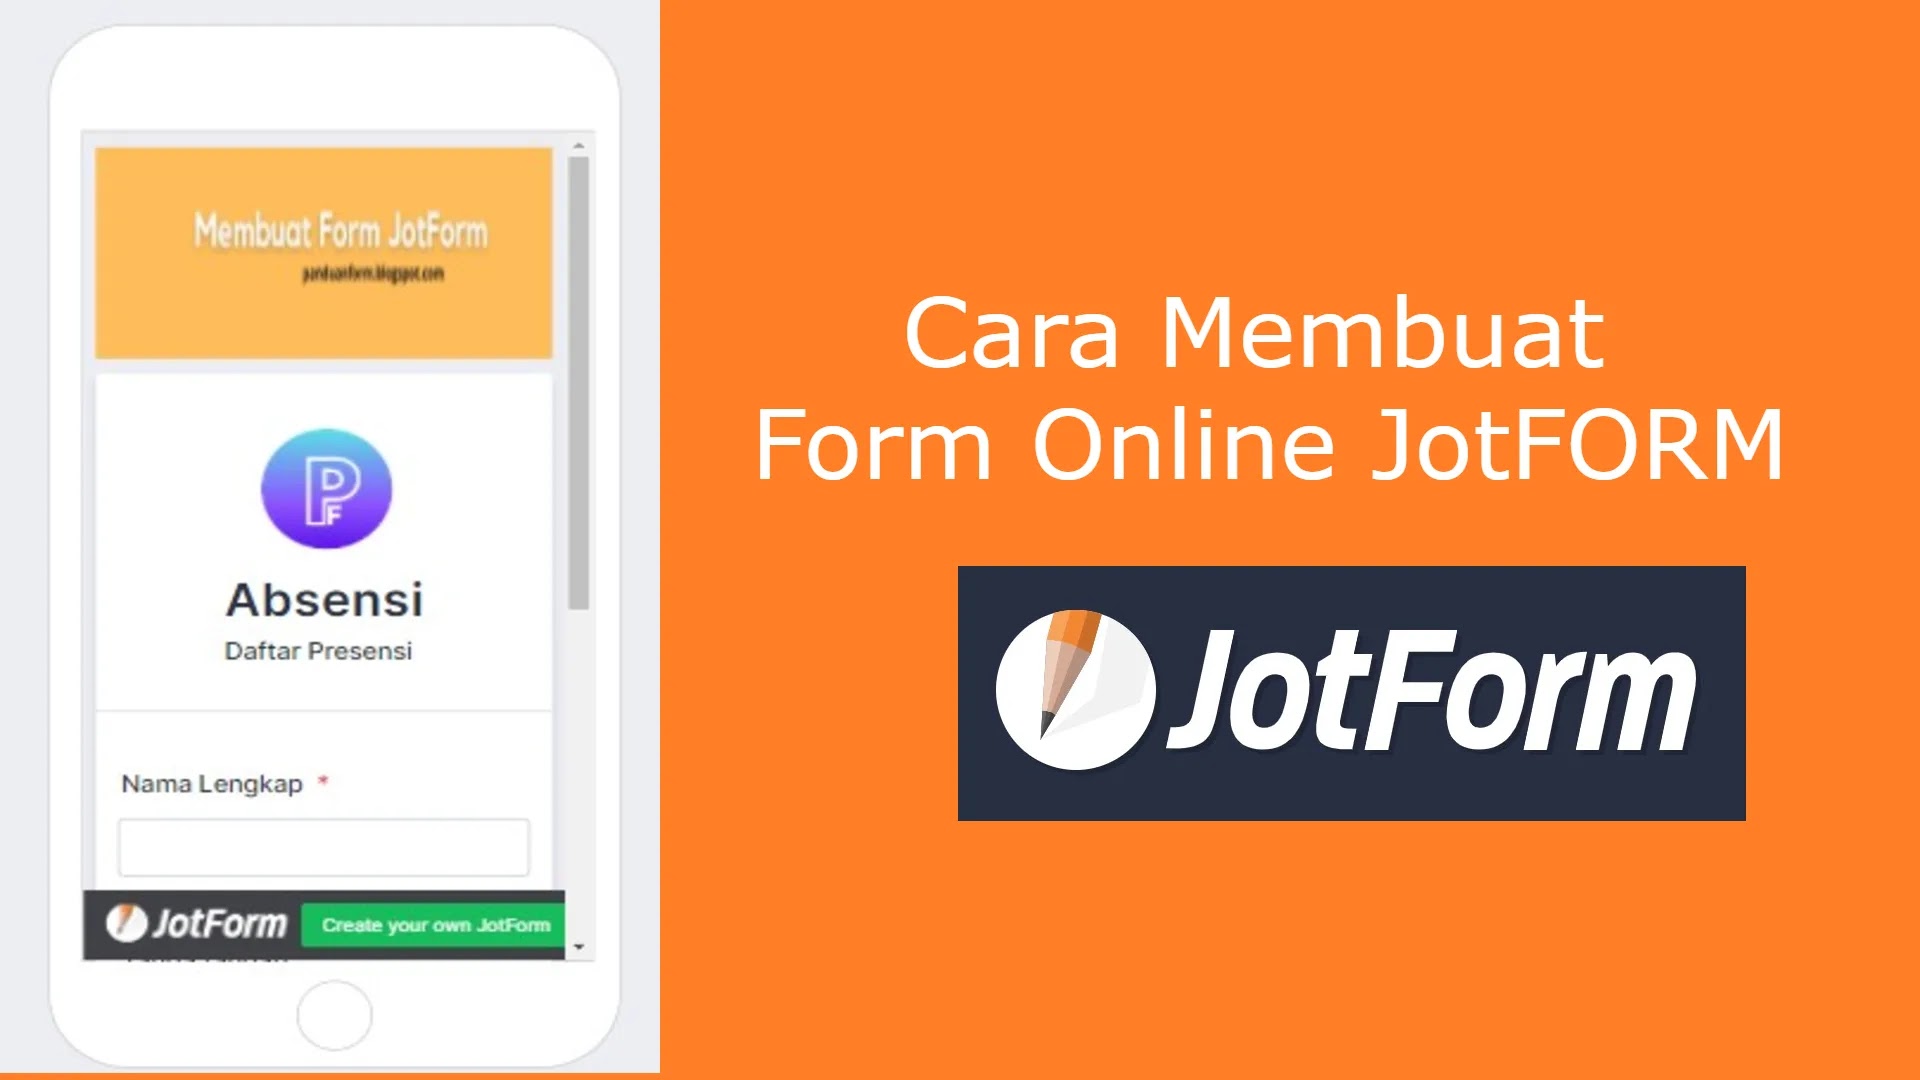 Cara Membuat Form Online dengan JotForm